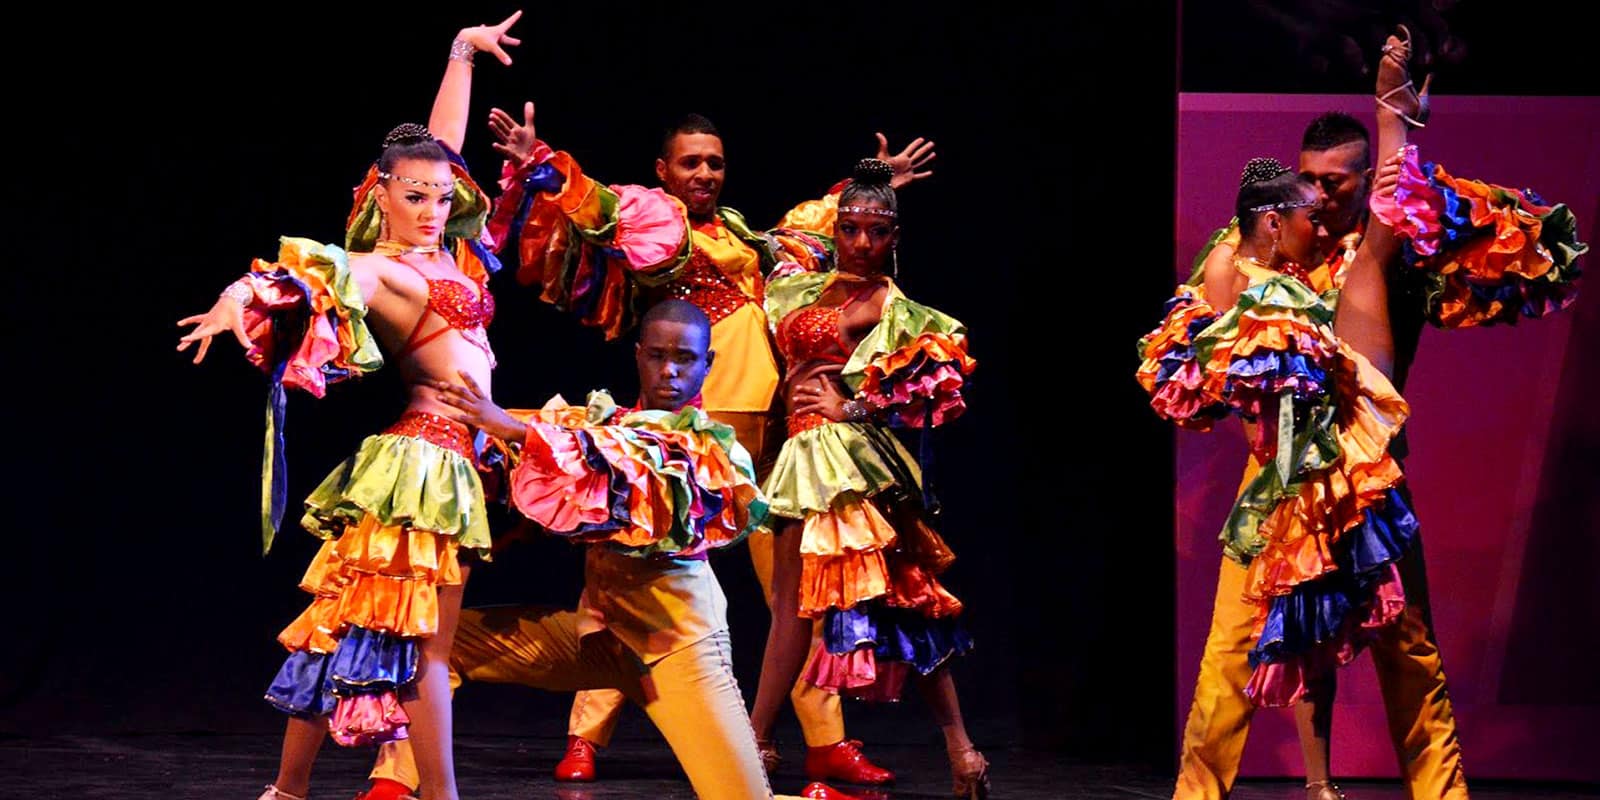 Mambo | ¡Qué bonito y sabroso es este baile cubano!